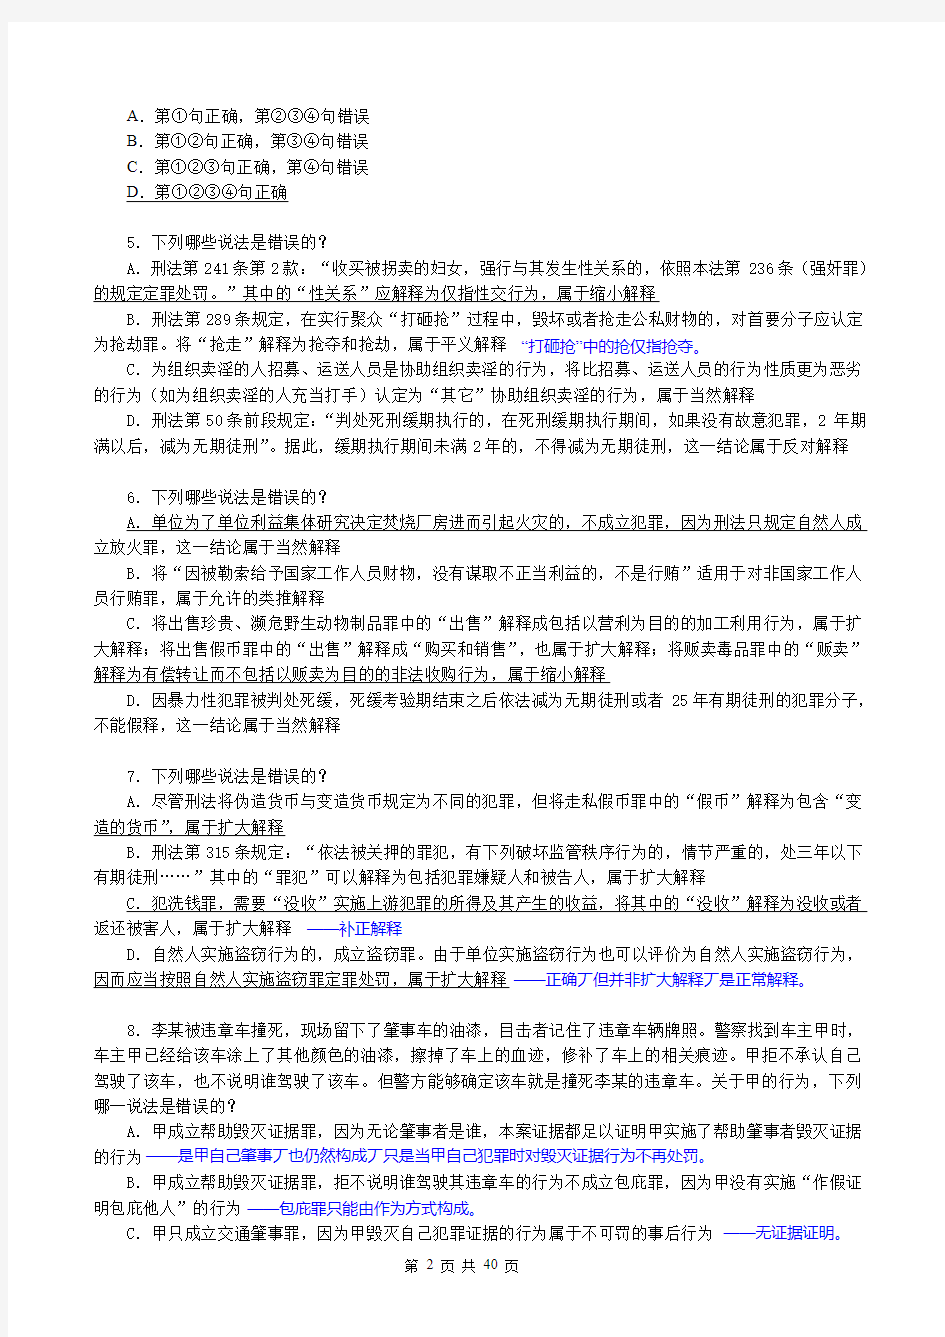 2013年综合提高班刘凤科刑法168题(含答案)